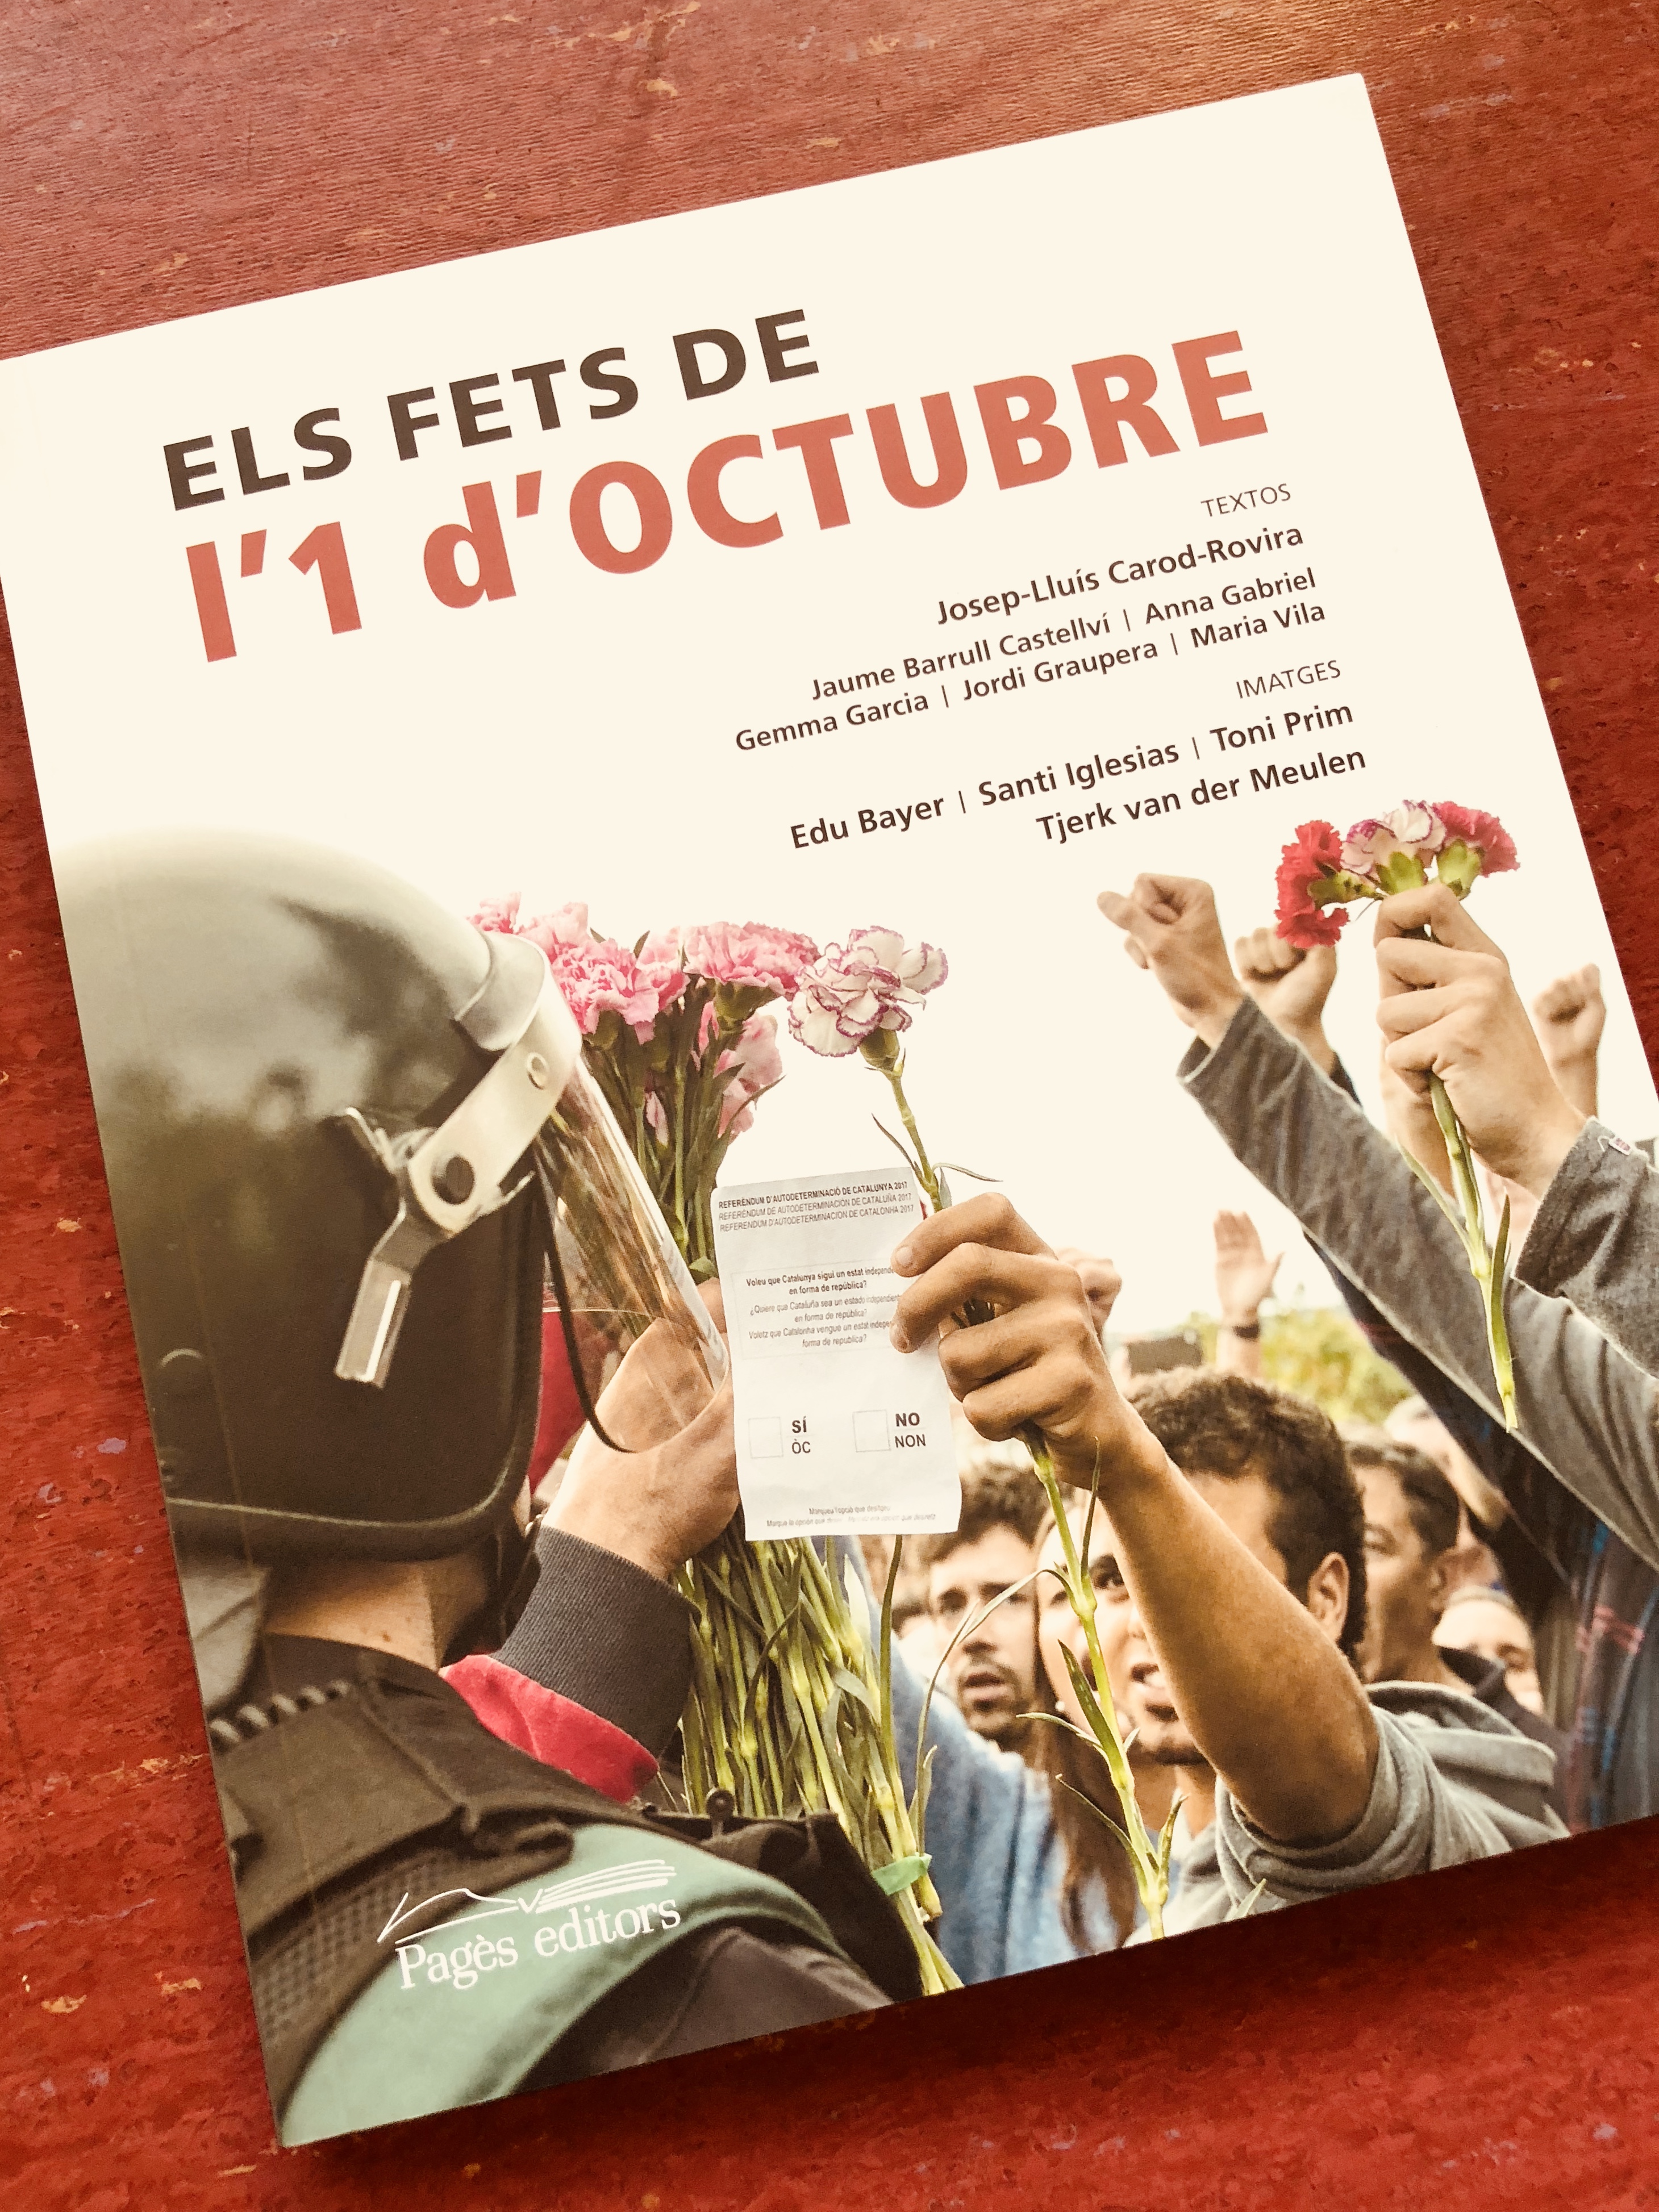 Pagès Editors presenta 'Els fets de l’1 d’octubre', el primer llibre de fotografies sobre aquesta històrica jornada